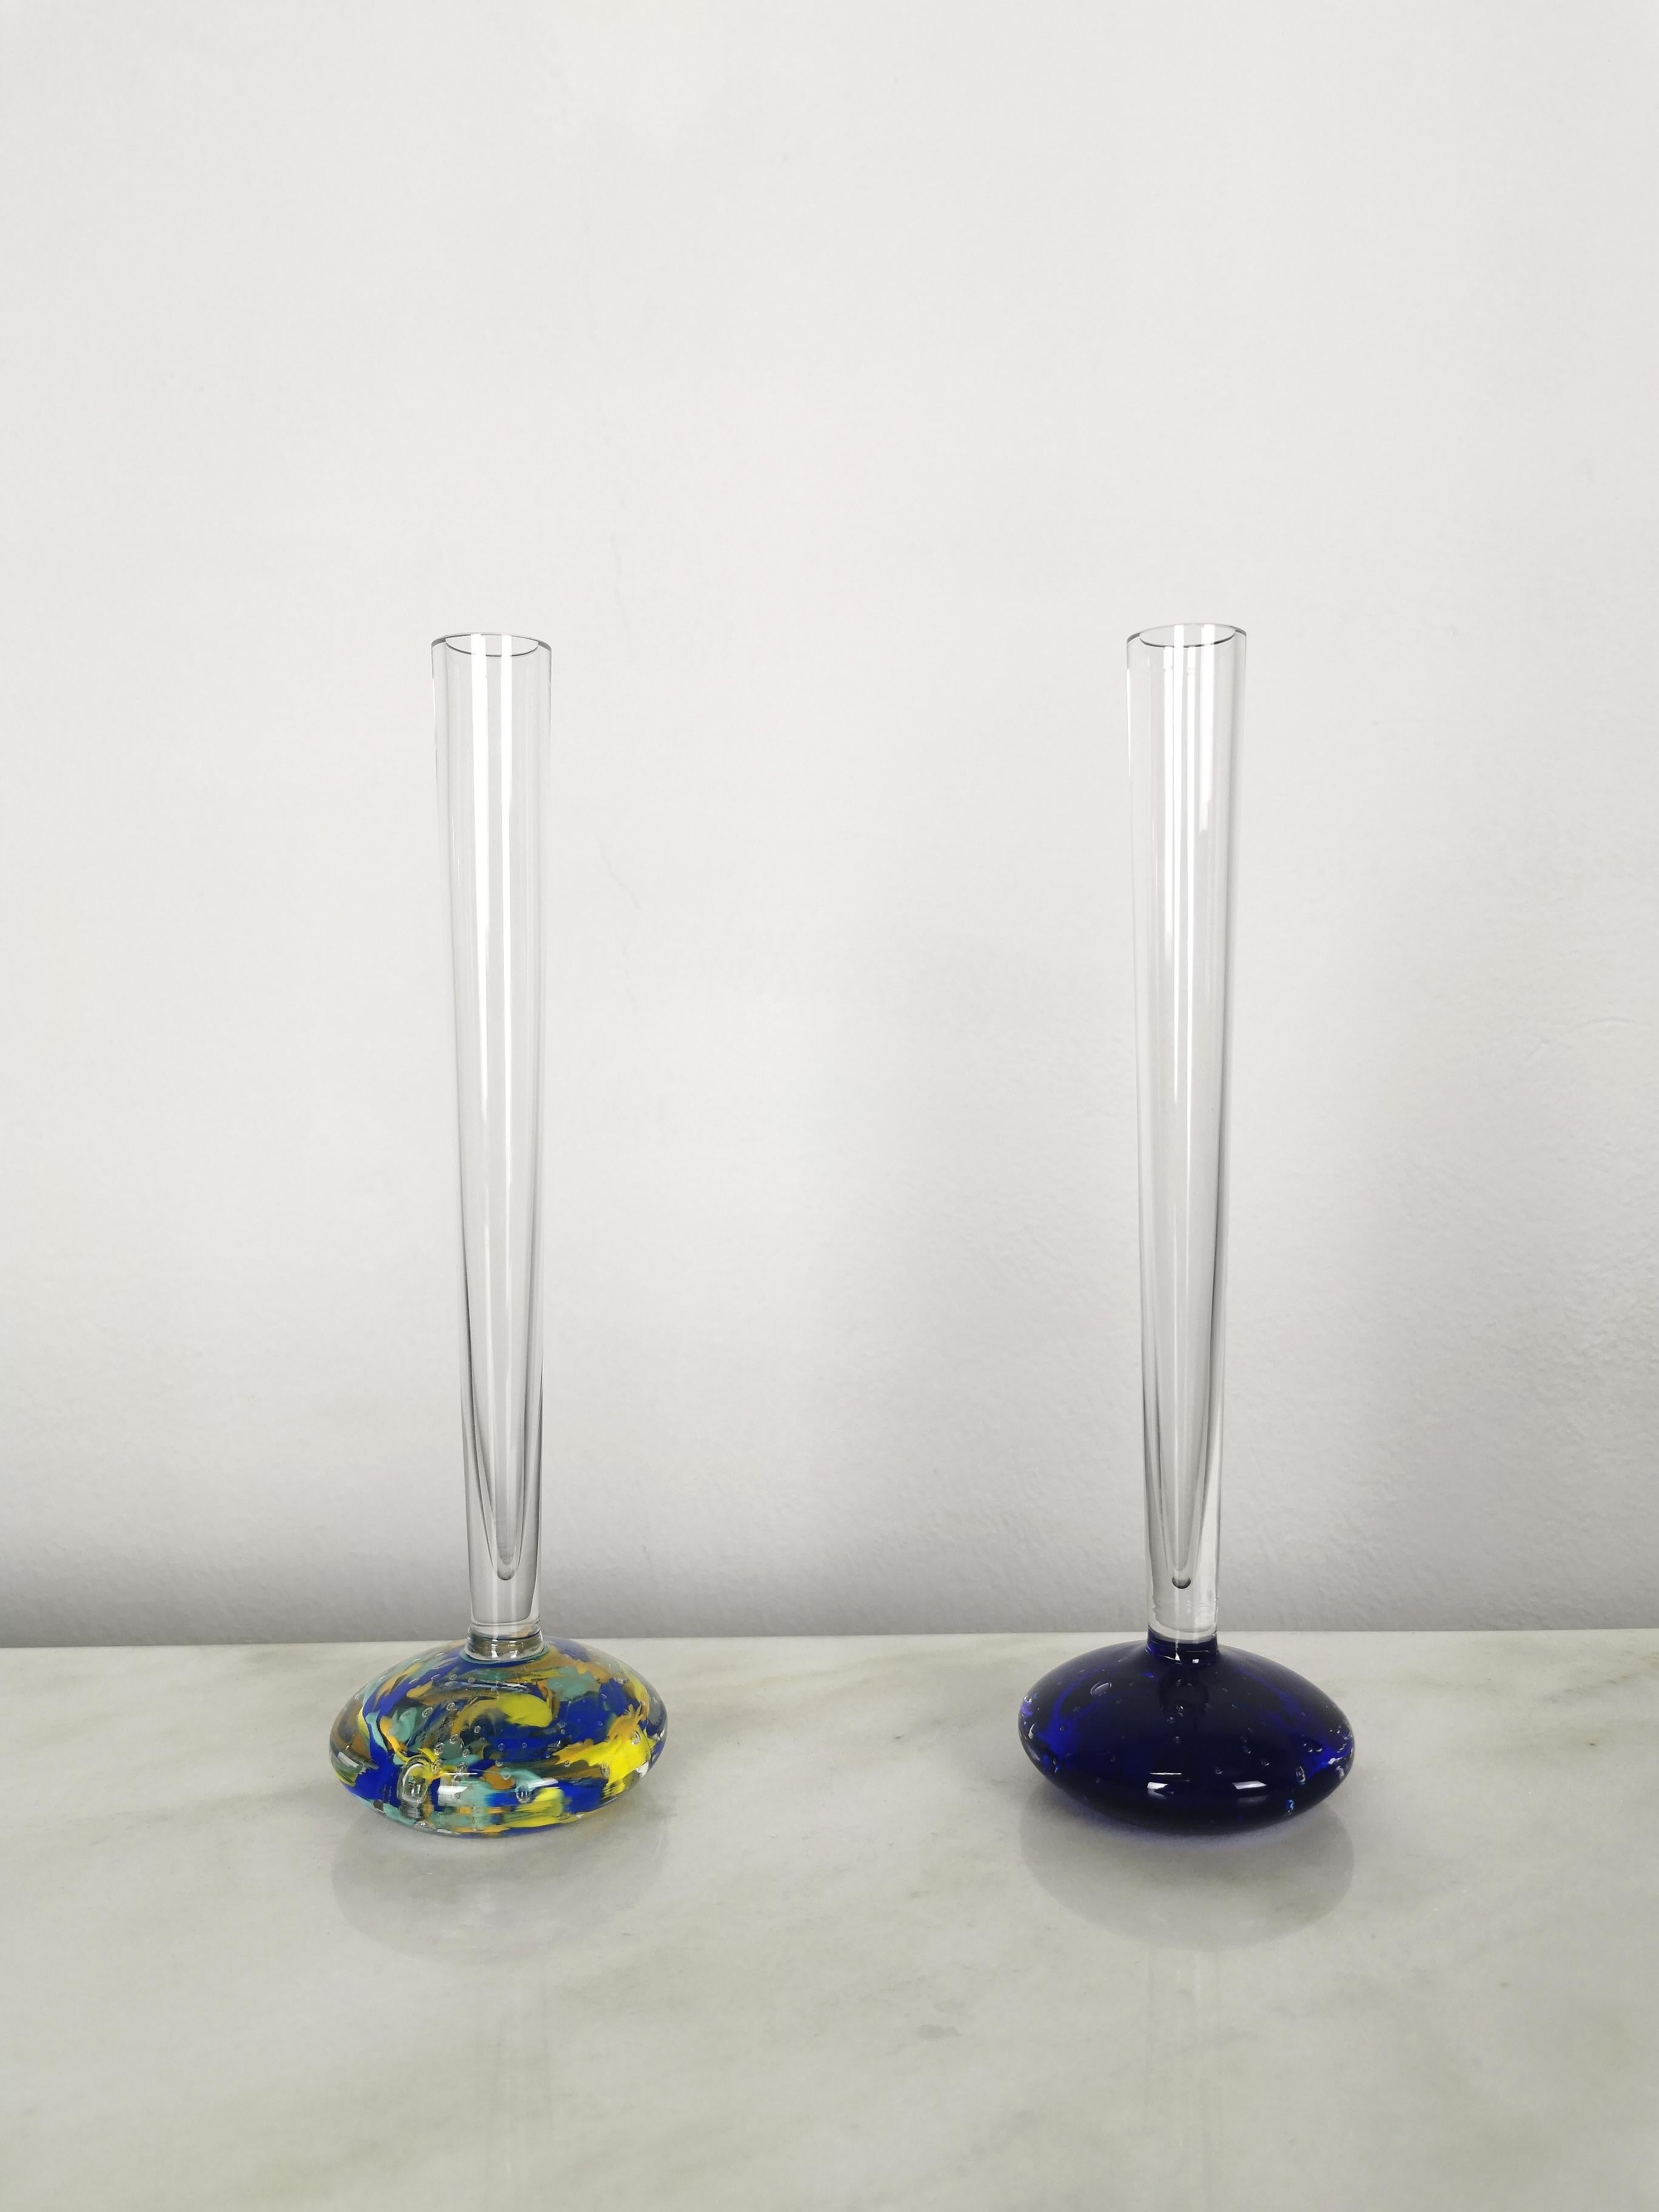 Ensemble de 2 vases à long col produits en Italie dans les années 70. Chaque vase individuel a été fabriqué en verre transparent de Murano et circulaire sur la partie inférieure avec les célèbres techniques sommerso et bullicante, qui créent